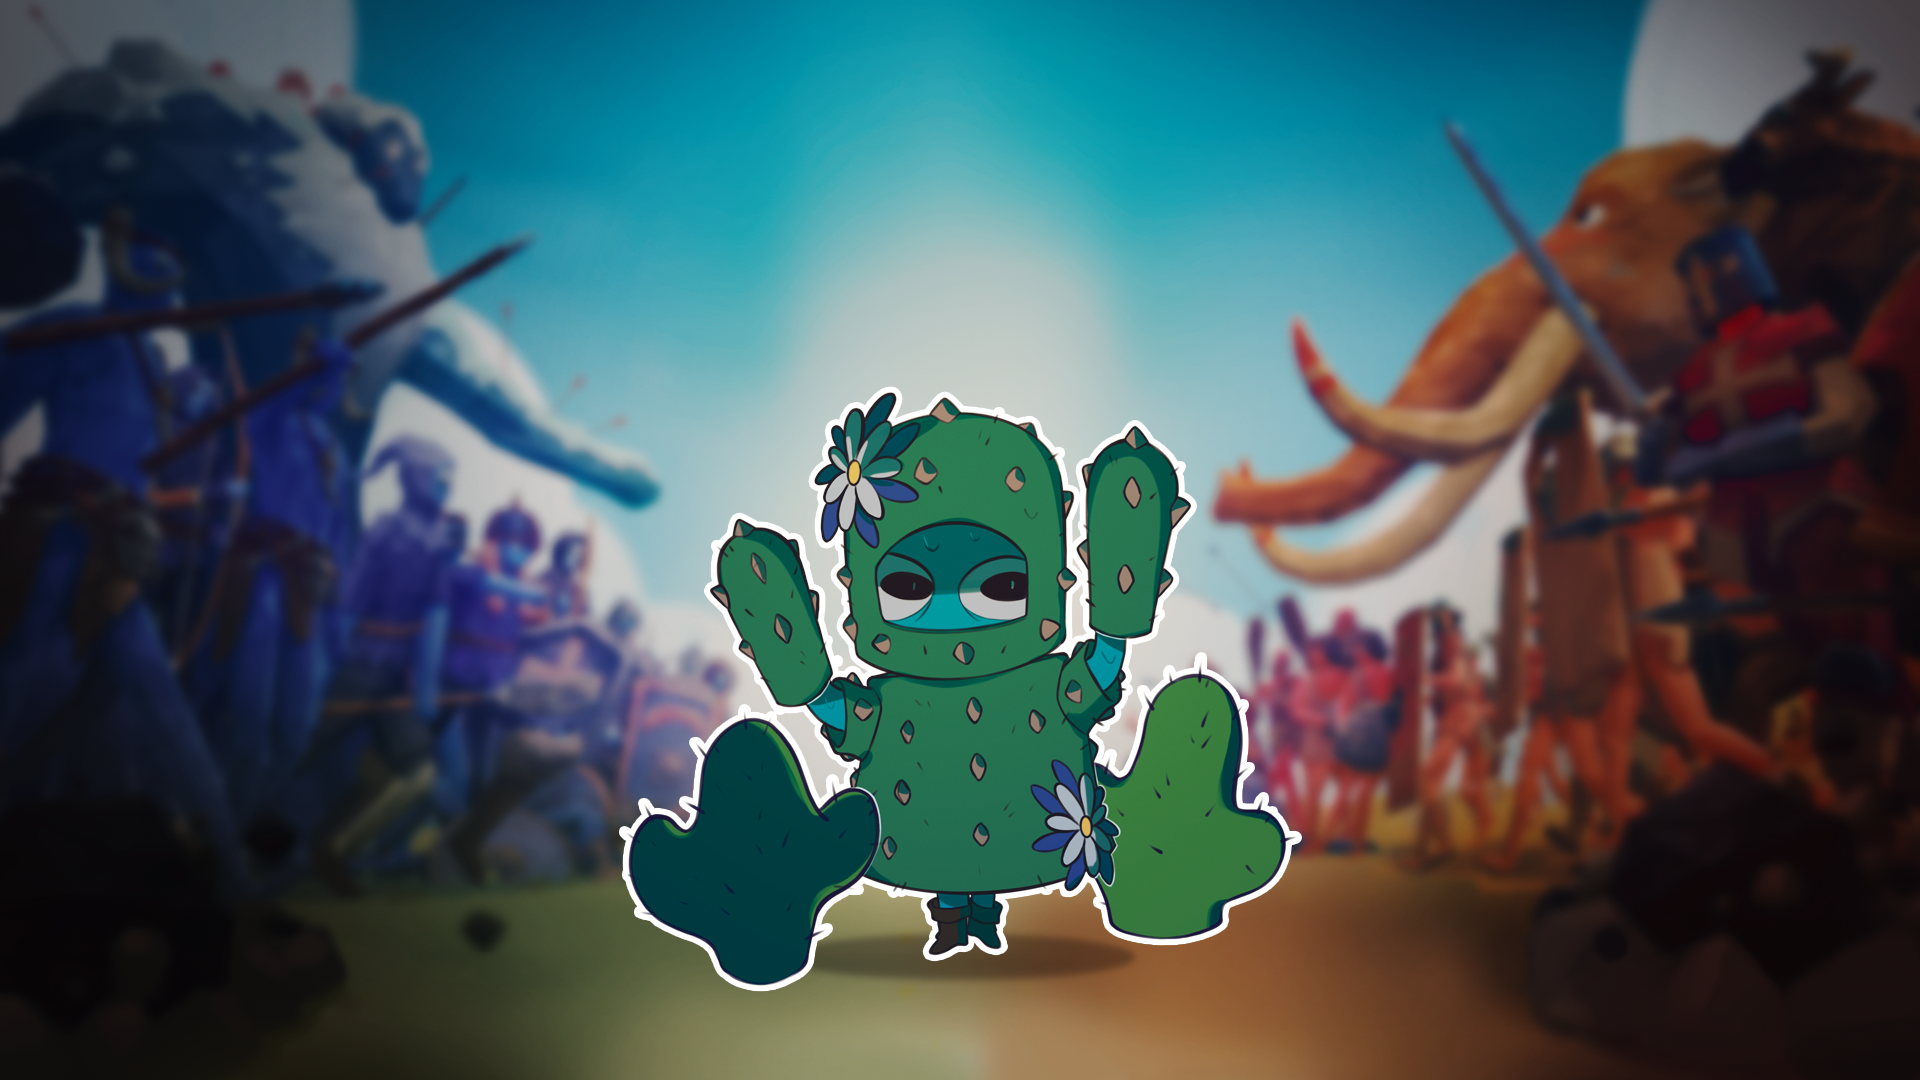 Cactus Conquest